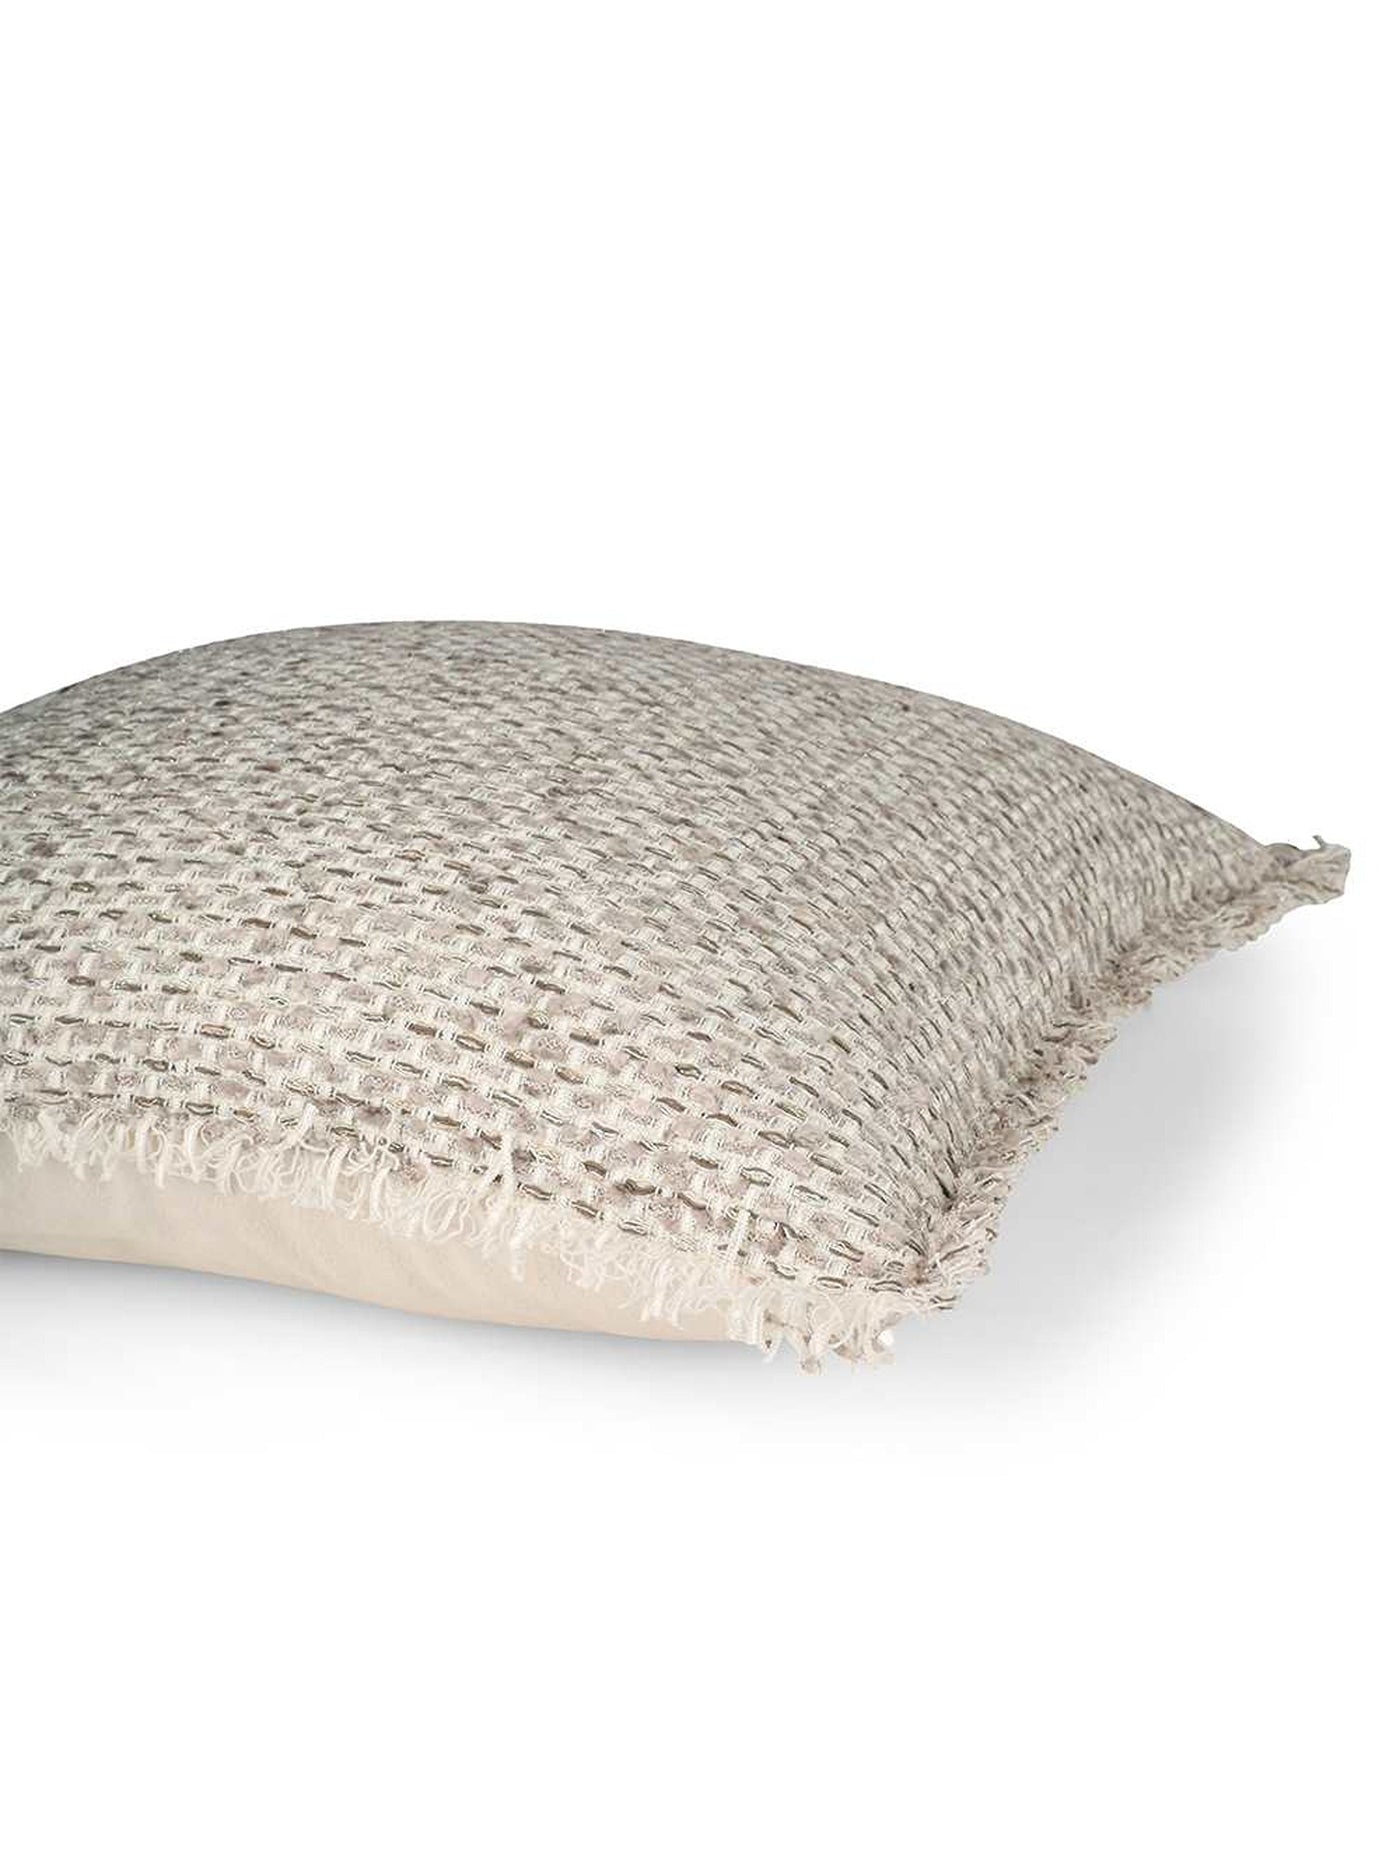 Cushion Cover - Flakes Neutral